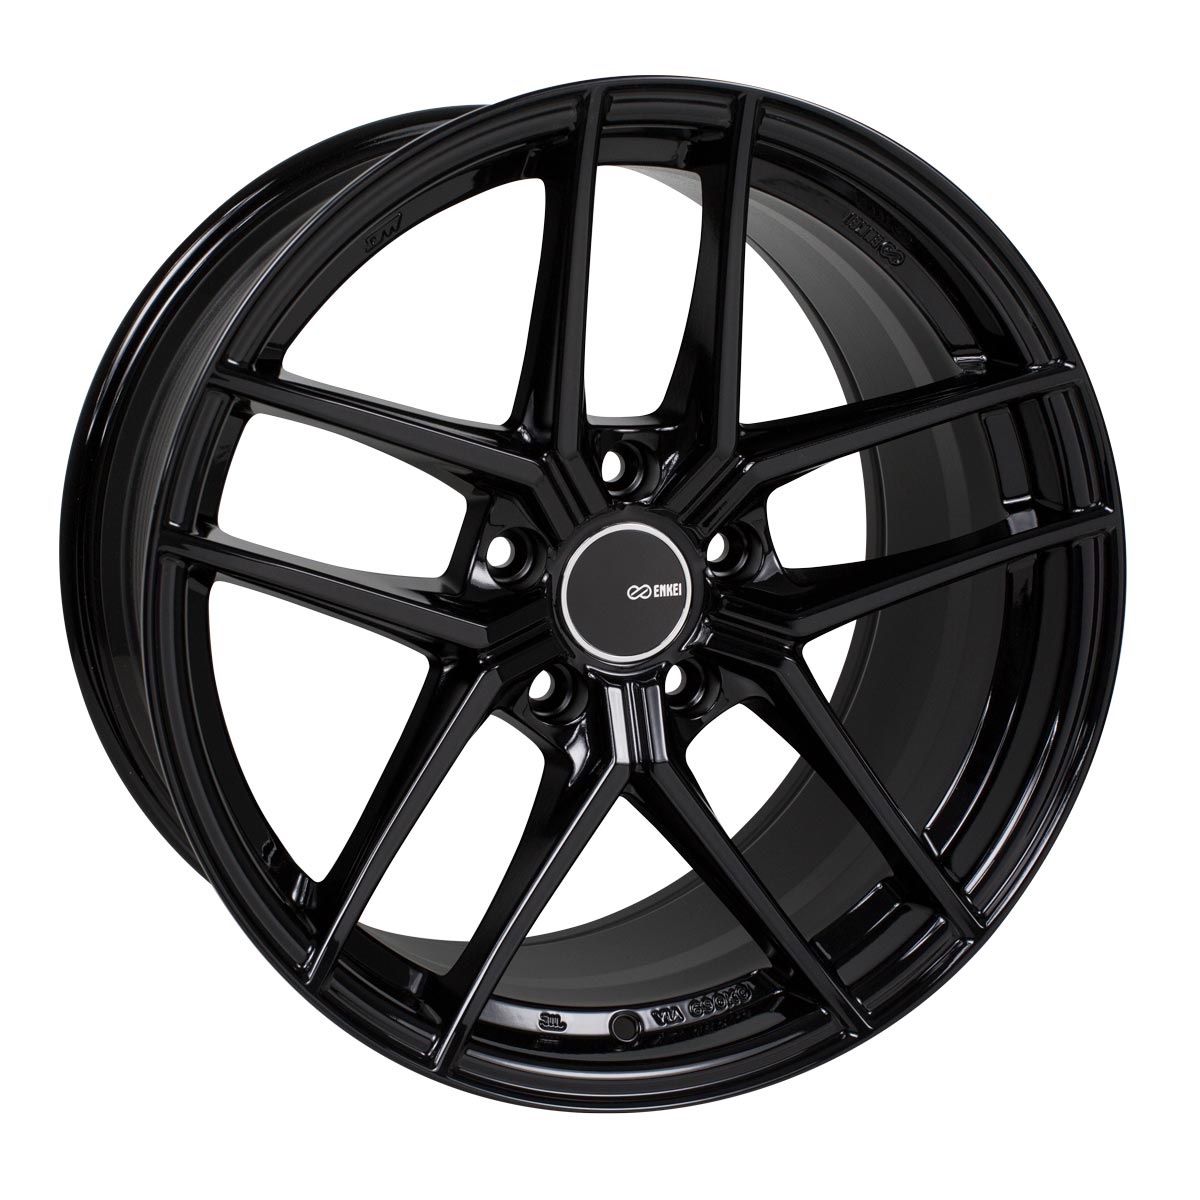 Enkei TY-5 Wheel Gloss Black 18x9.5 +35 5x120 498-895-1235BK